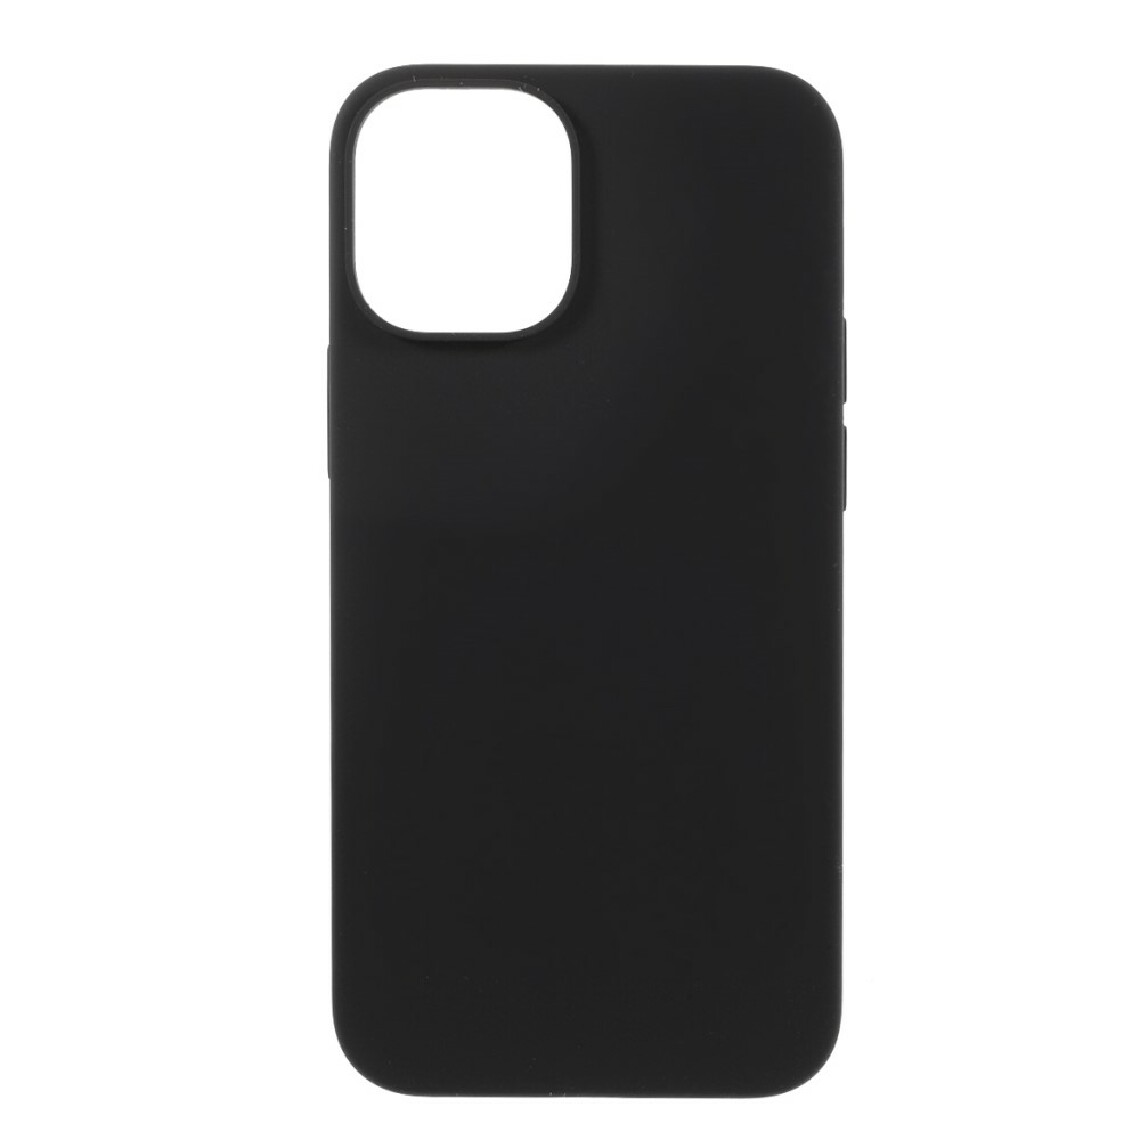 Other - Coque en silicone absorption des chocs liquides noir pour votre Apple iPhone 12 Mini - Coque, étui smartphone